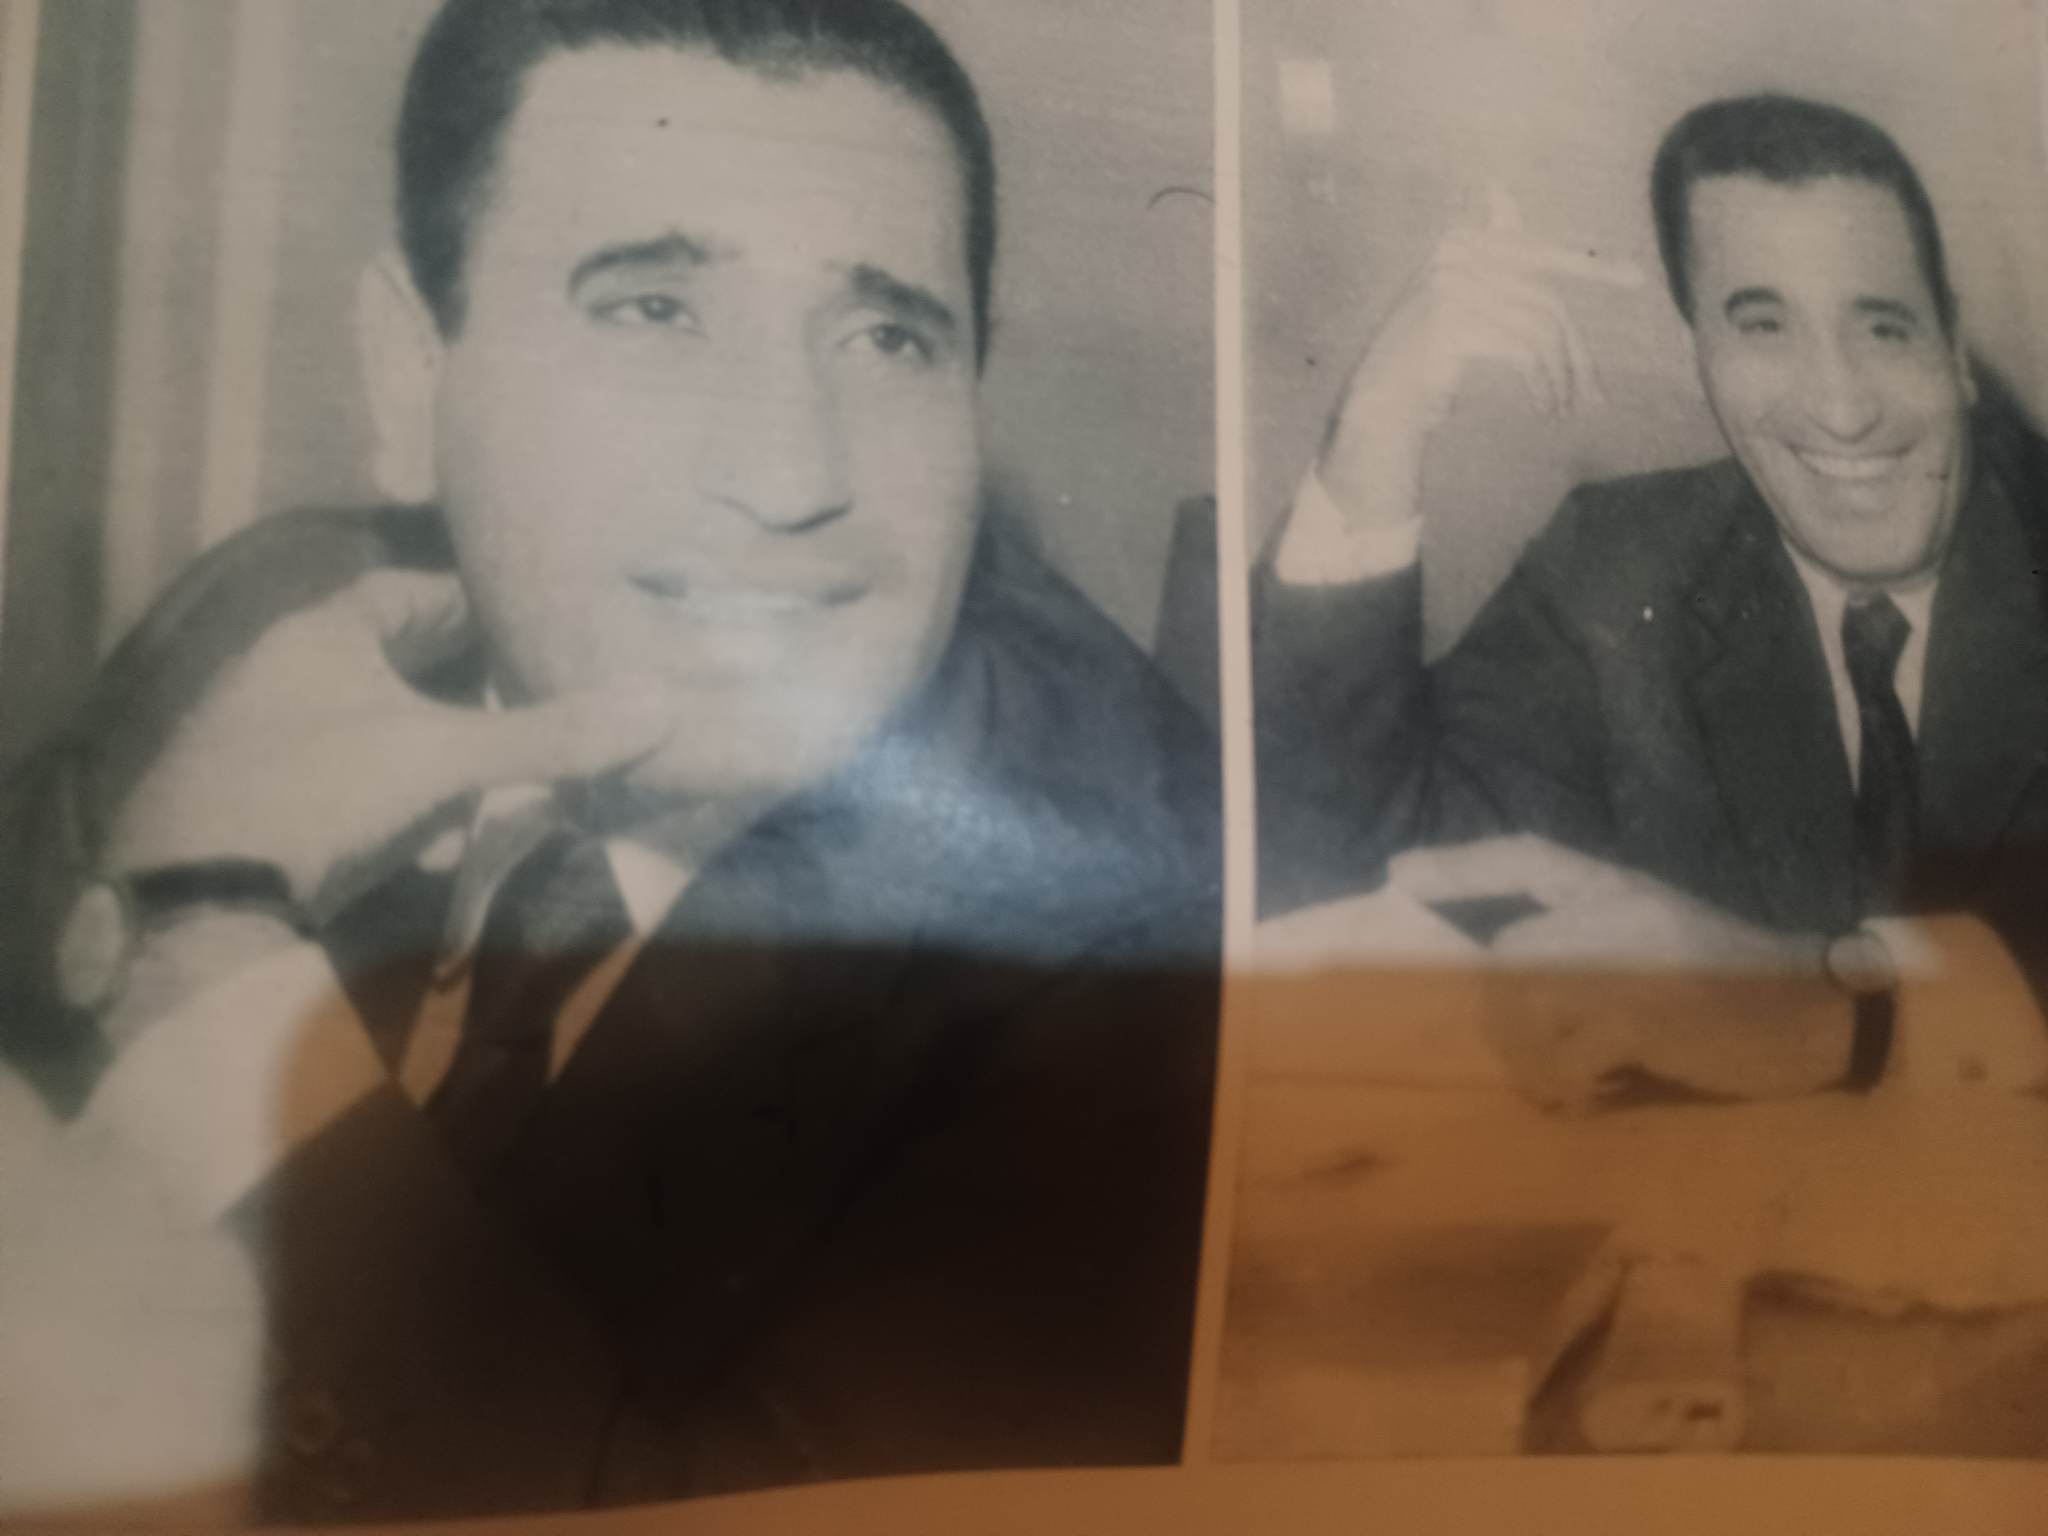 حوار نادر أجراه الأستاذ جليل البنداري مع الأستاذ محمد حسنين هيكل في مجلة آخر ساعة